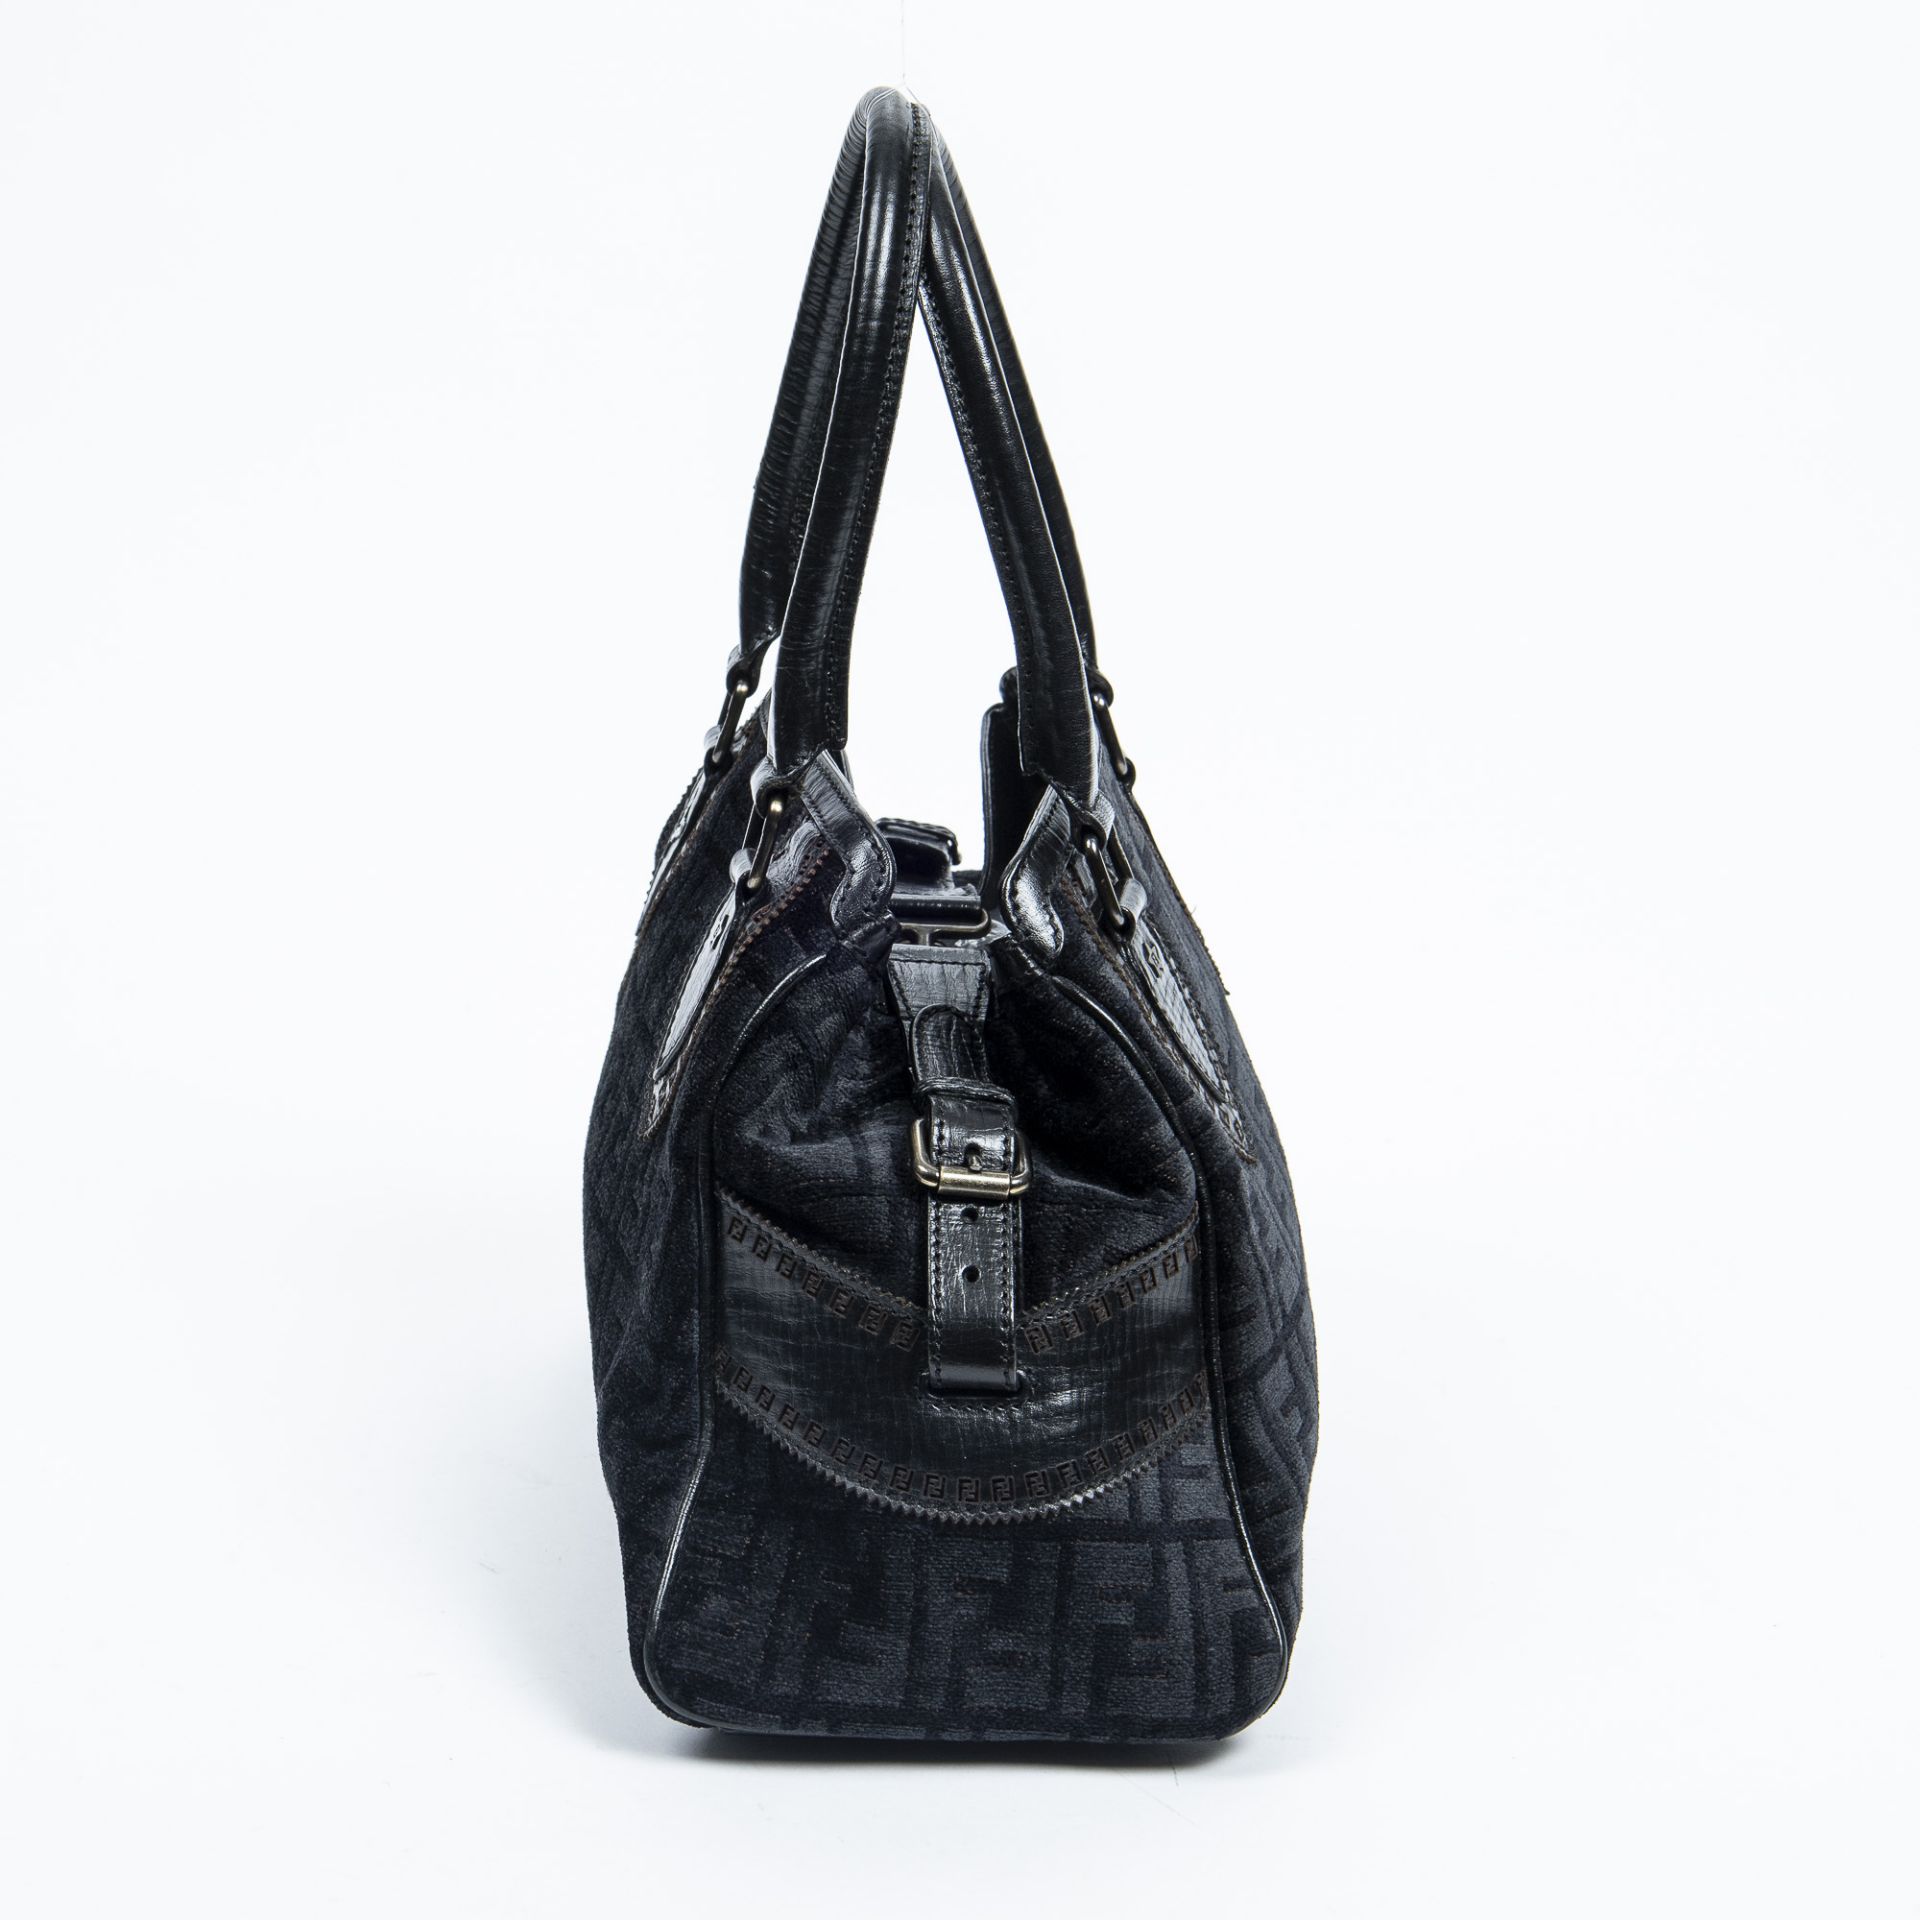 RRP £945.00 Lot To Contain 1 Fendi Canvas Du Jour Bag Handbag In Black - 31*23*13cm - A - - Image 3 of 4